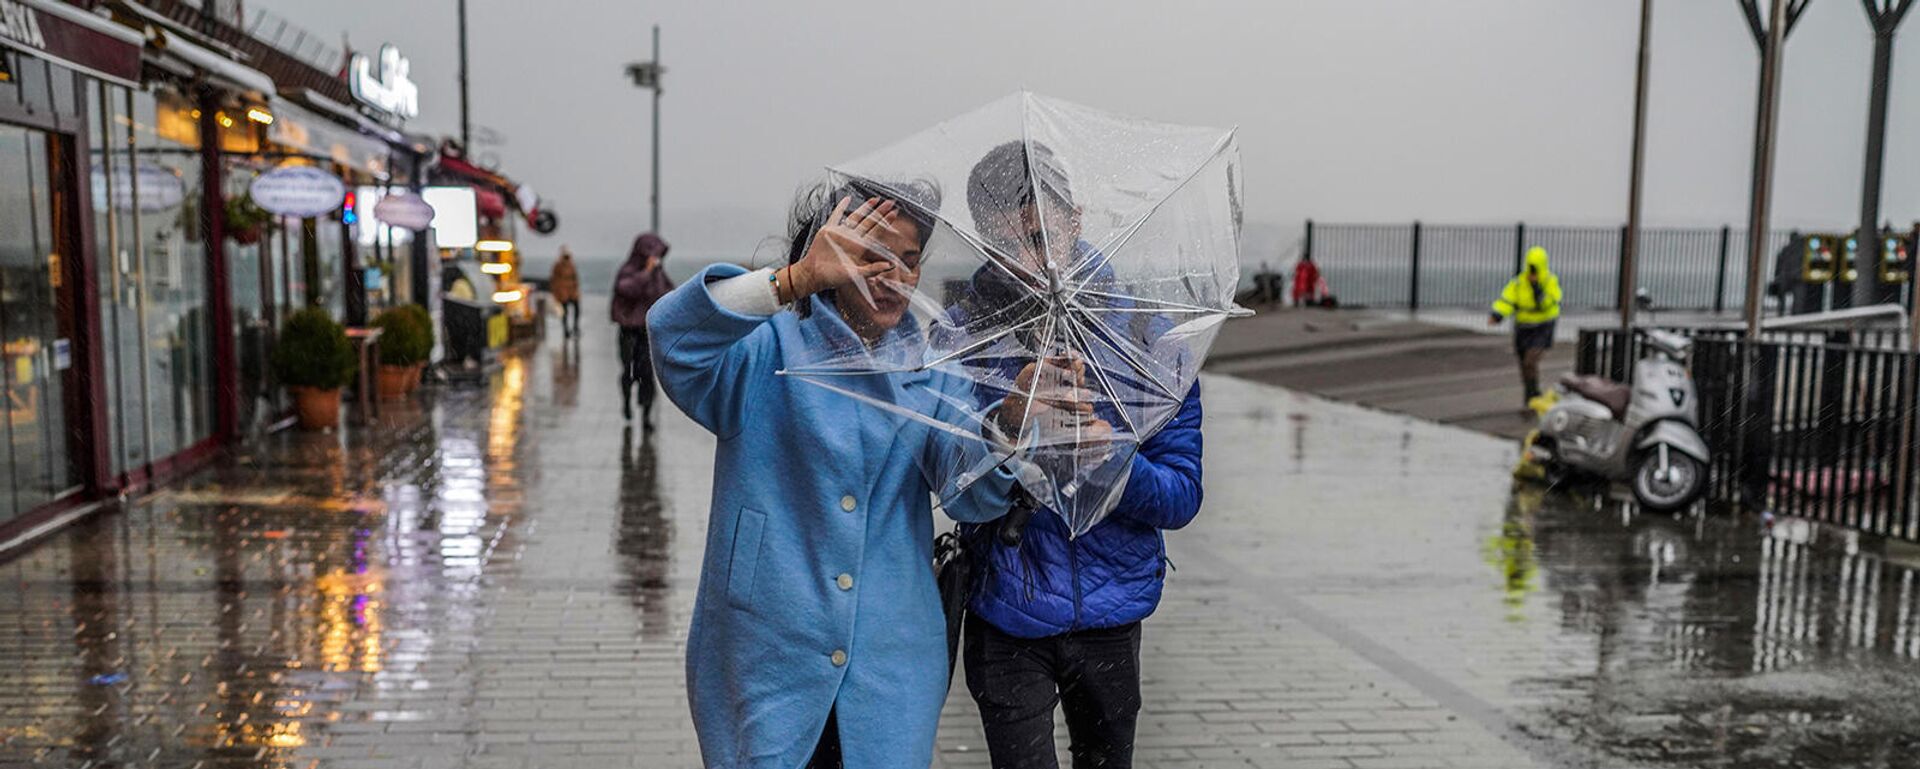 Փոթորիկը Ստամբուլում ուղեկցվել է հորդառատ անձրևներով (29 նոյեմբեր, 2021թ)․ Ստամբուլ - Sputnik Արմենիա, 1920, 30.11.2021